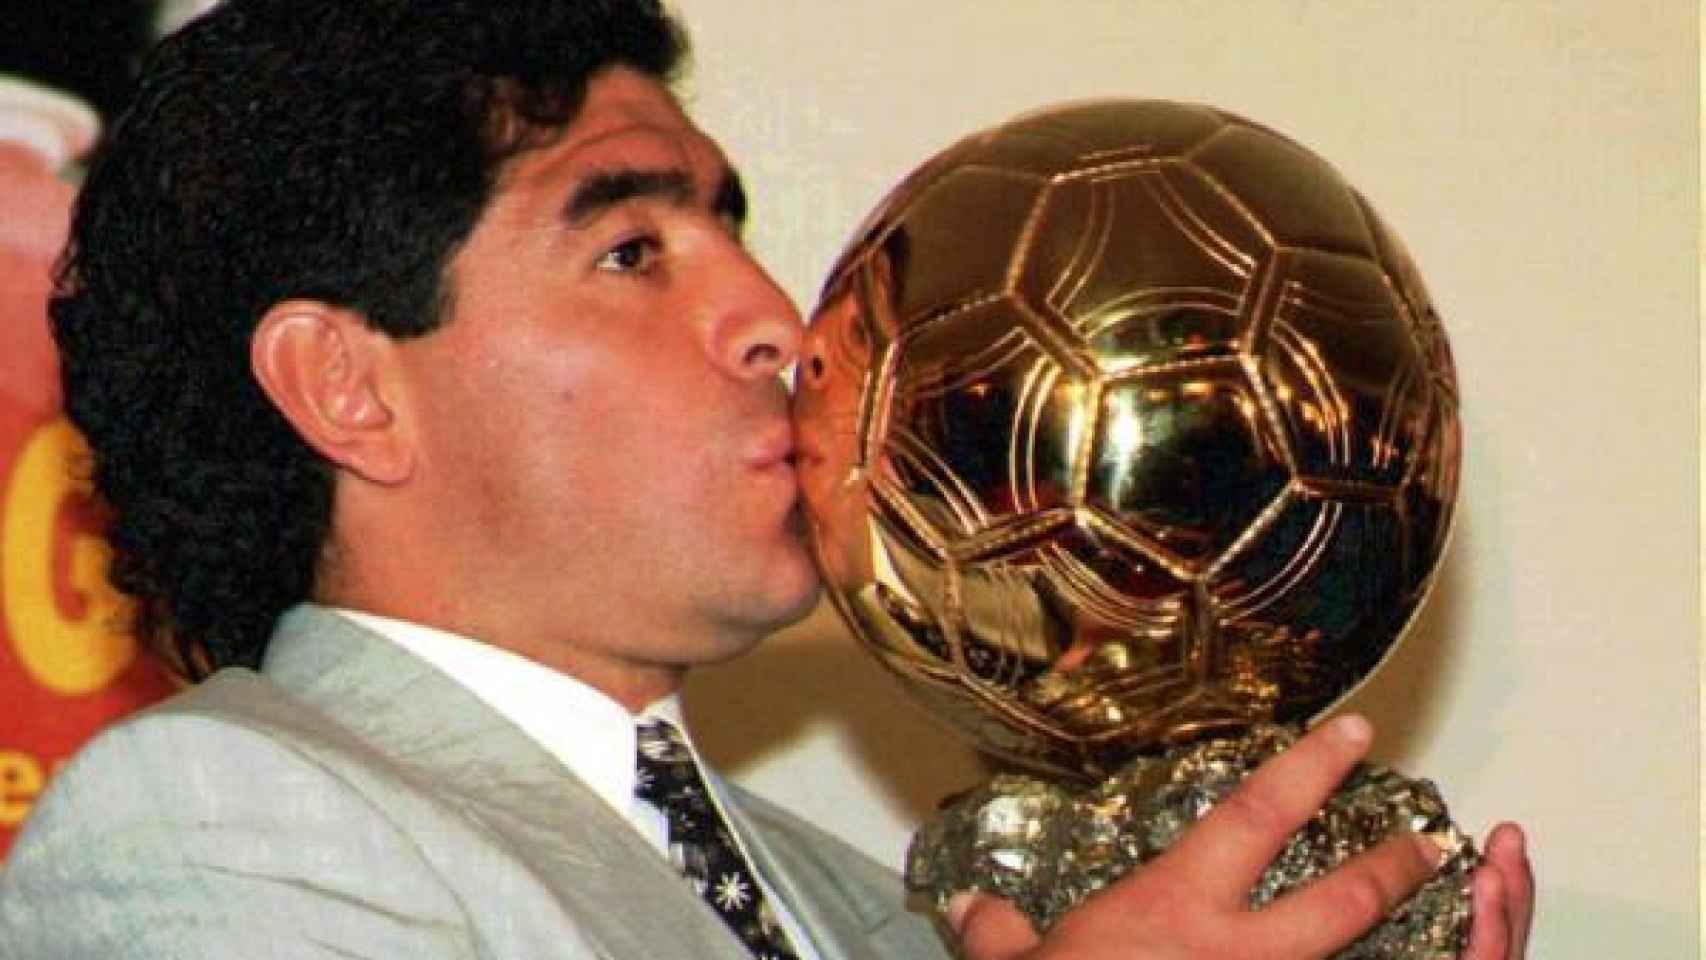 Diego Armando Maradona recibió en 1995 el Balón de Oro honorífico